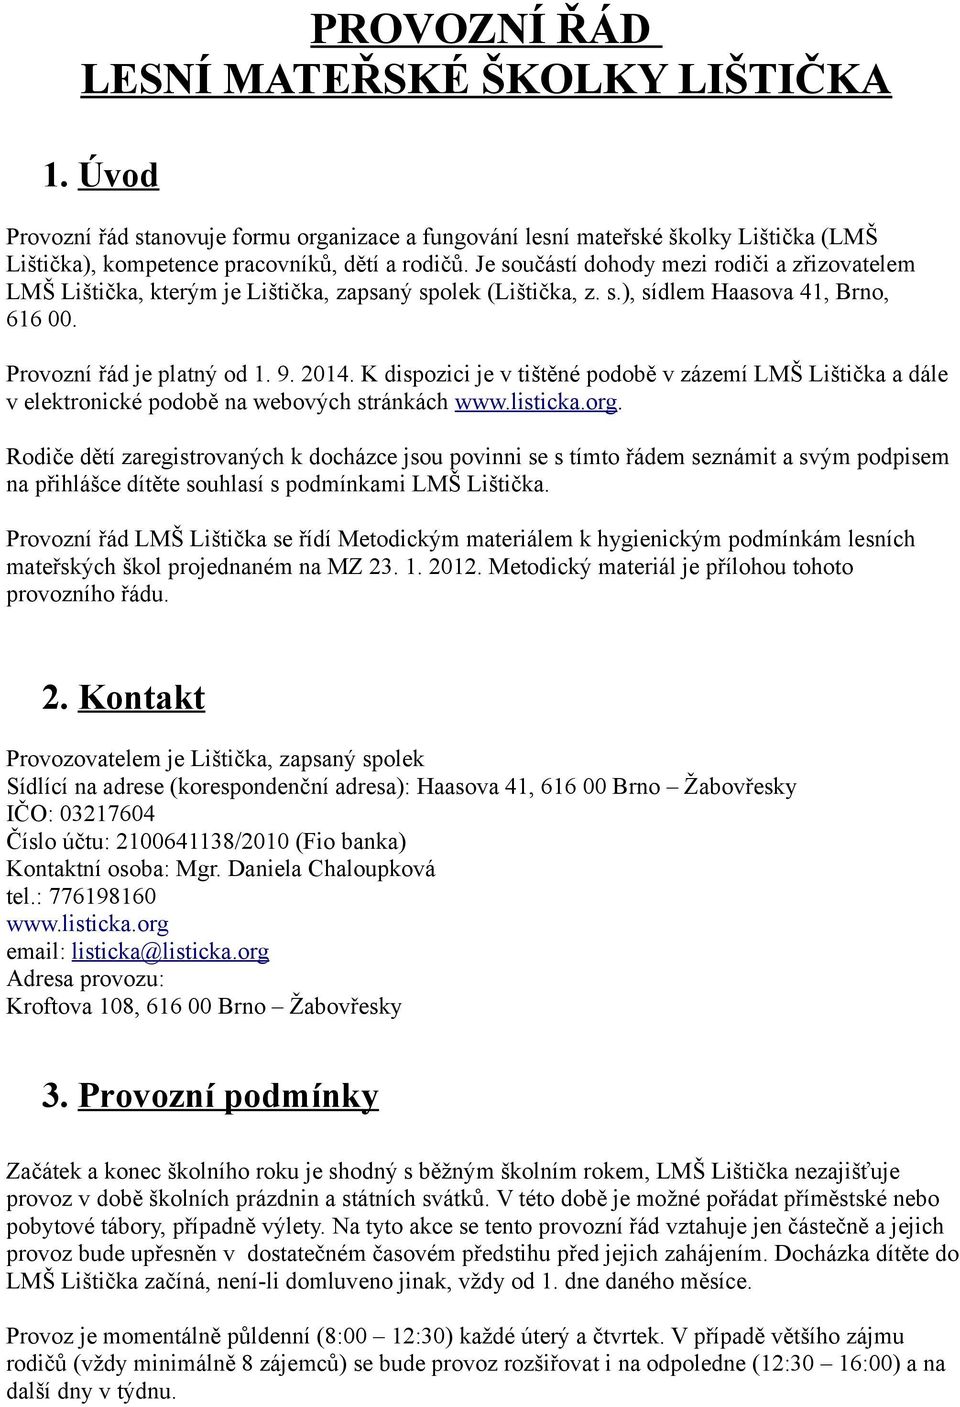 K dispozici je v tištěné podobě v zázemí LMŠ Lištička a dále v elektronické podobě na webových stránkách www.listicka.org.